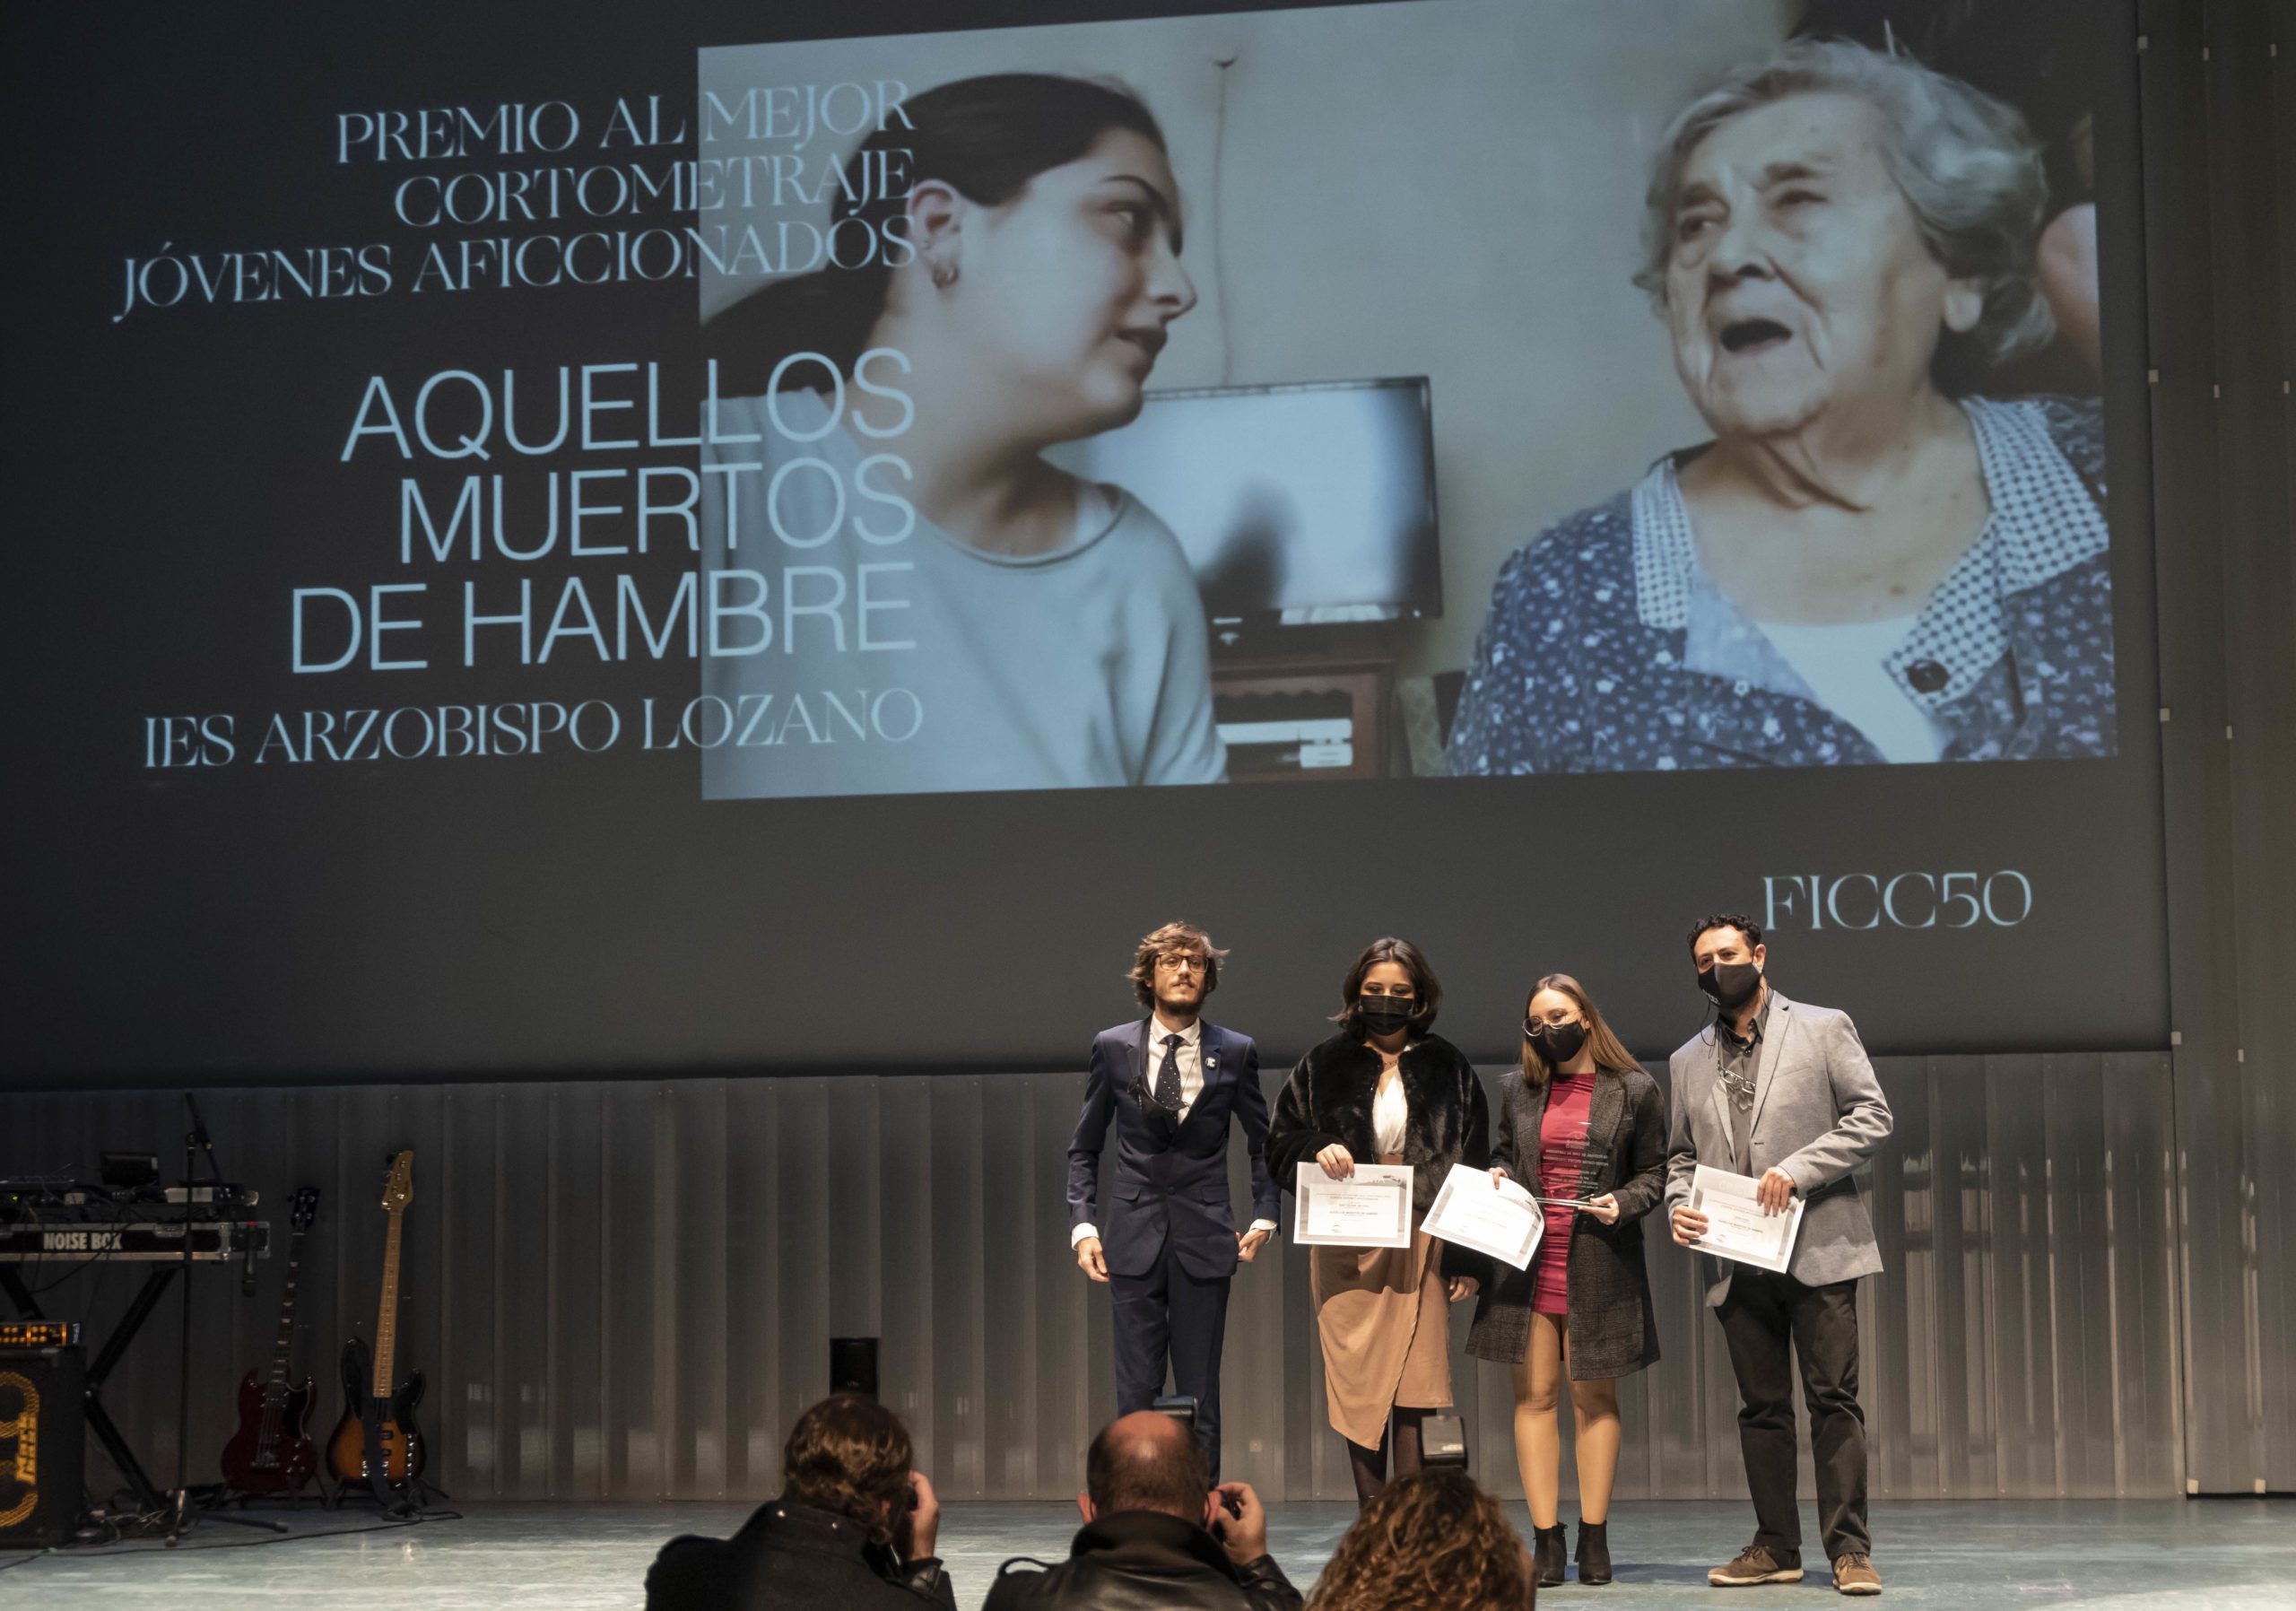 El corto «Aquellos muertos de hambre» gana premio «Jóvenes aficionados» del  Festival Internacional de Cine de Cartagena